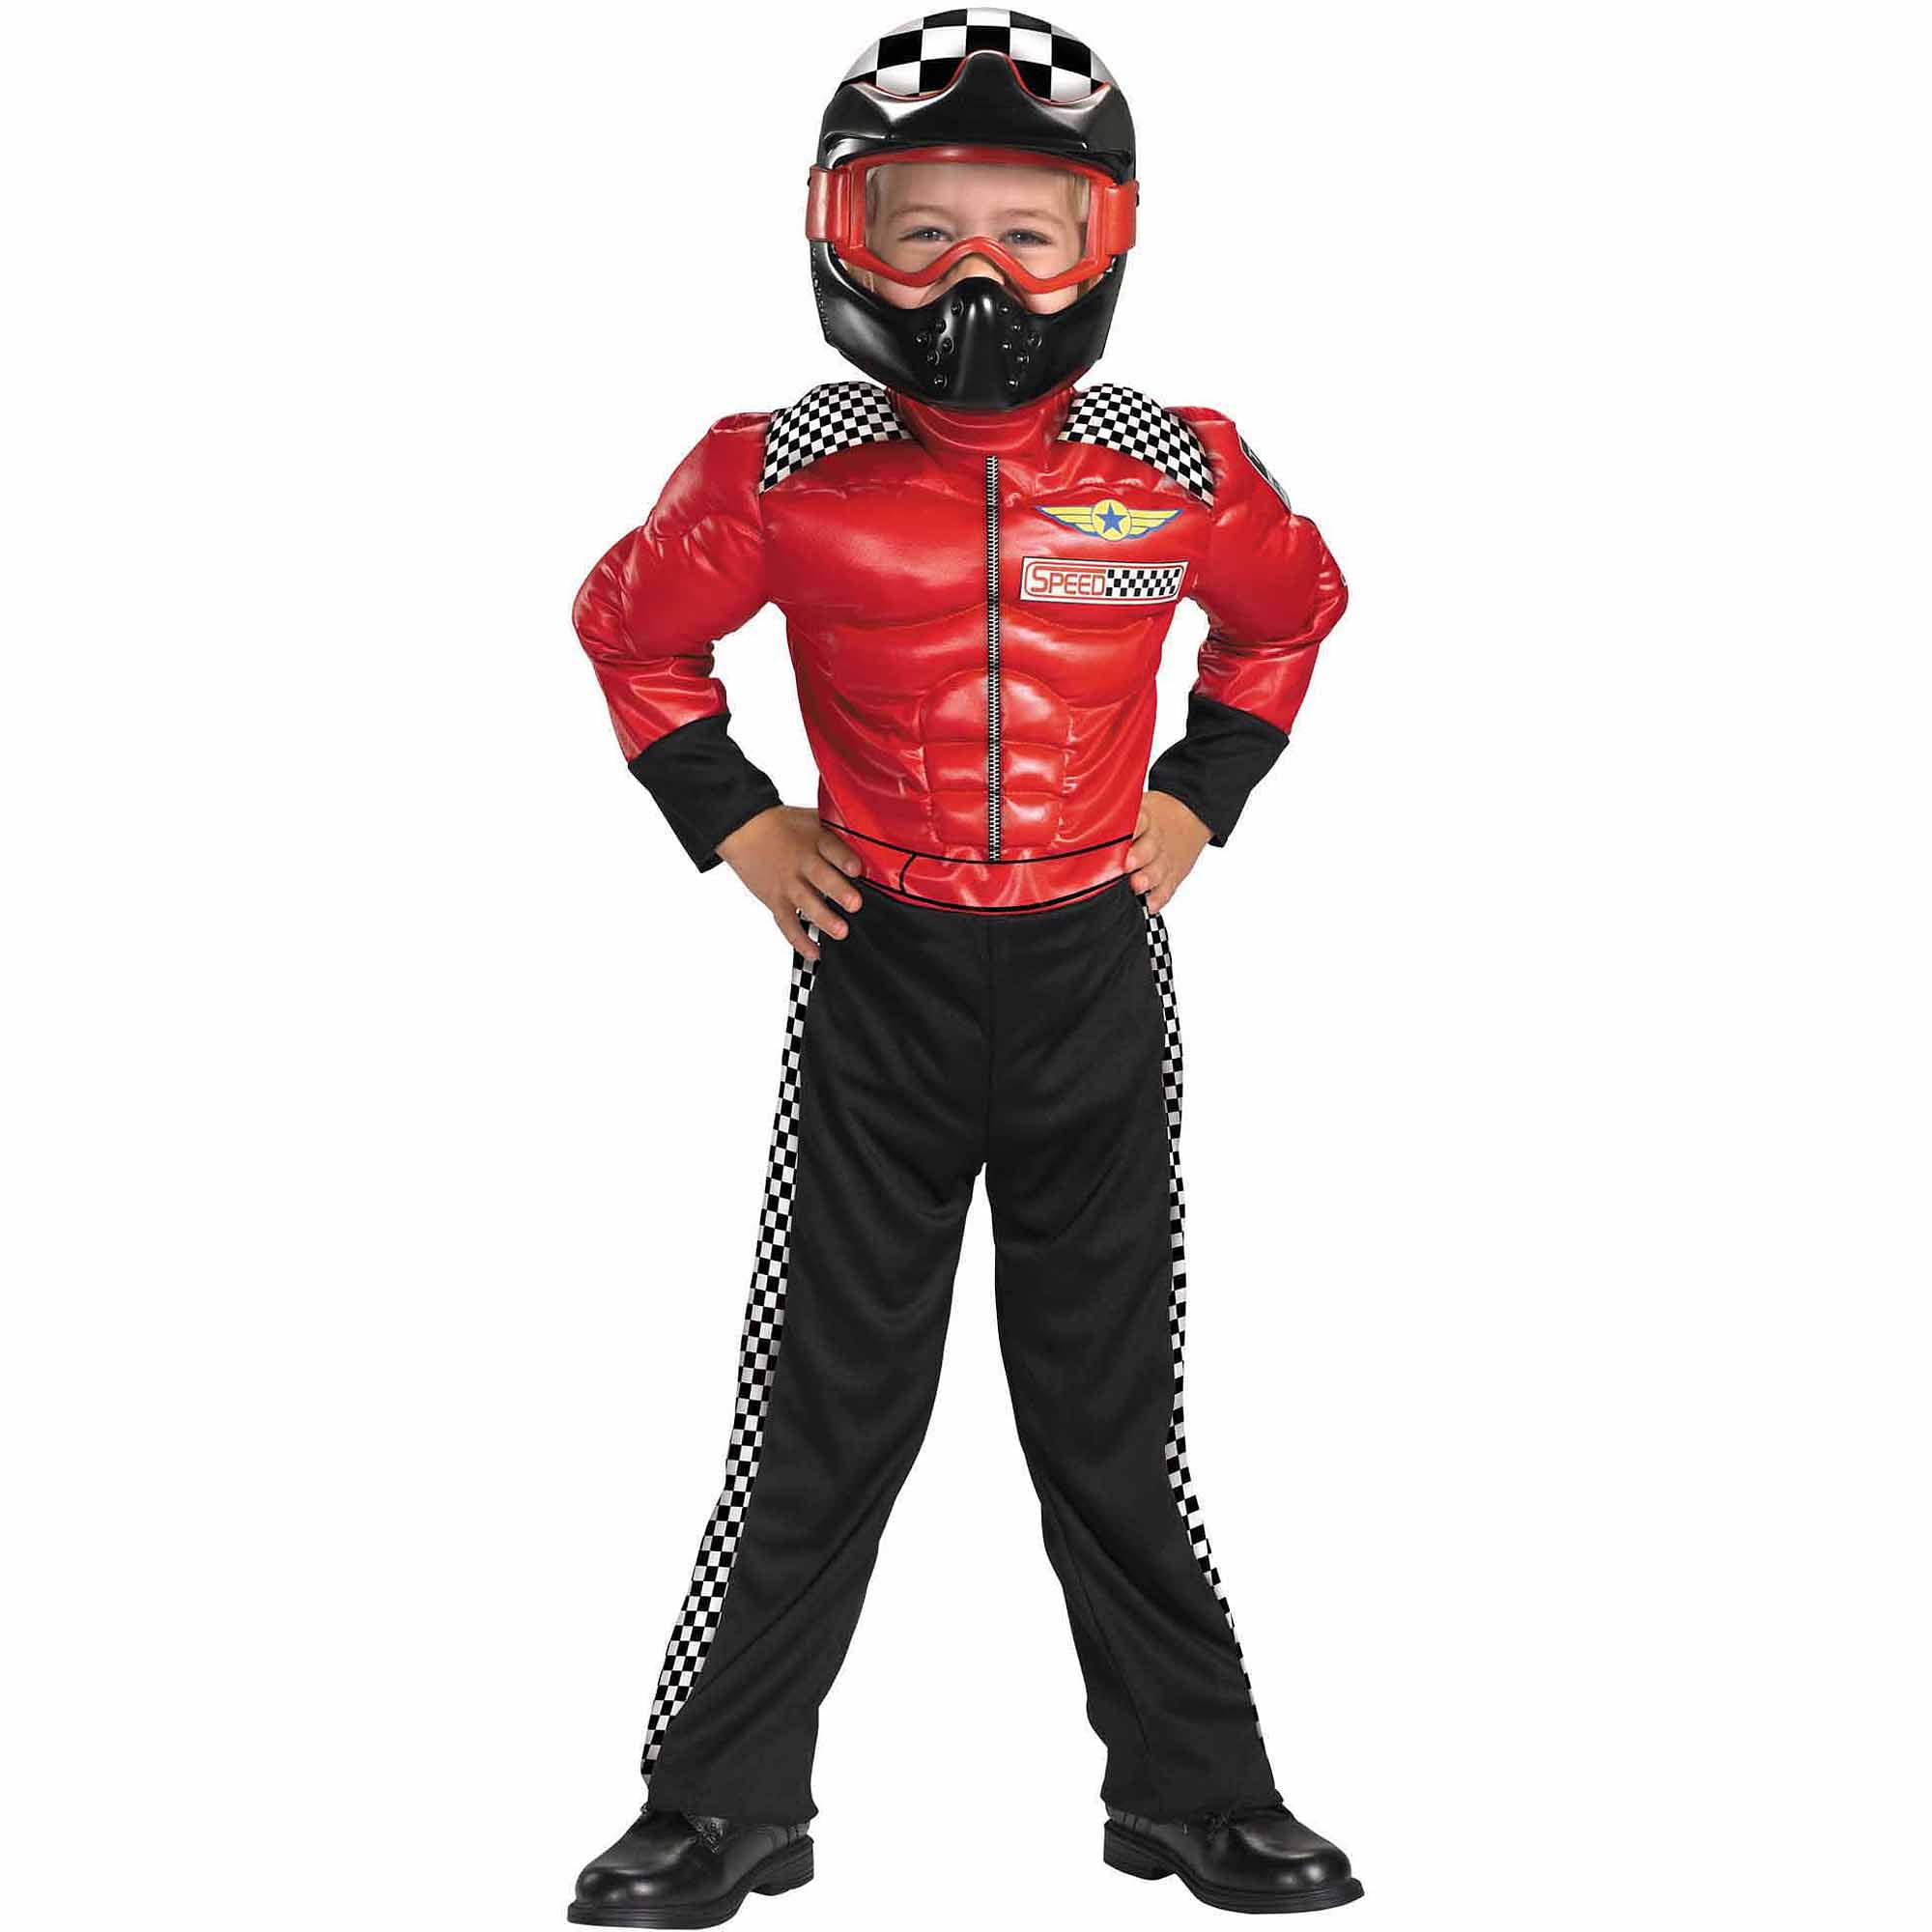 Wonderbaar Turbo Racer Child Halloween Costume, S (4-6) - Walmart.com XK-83